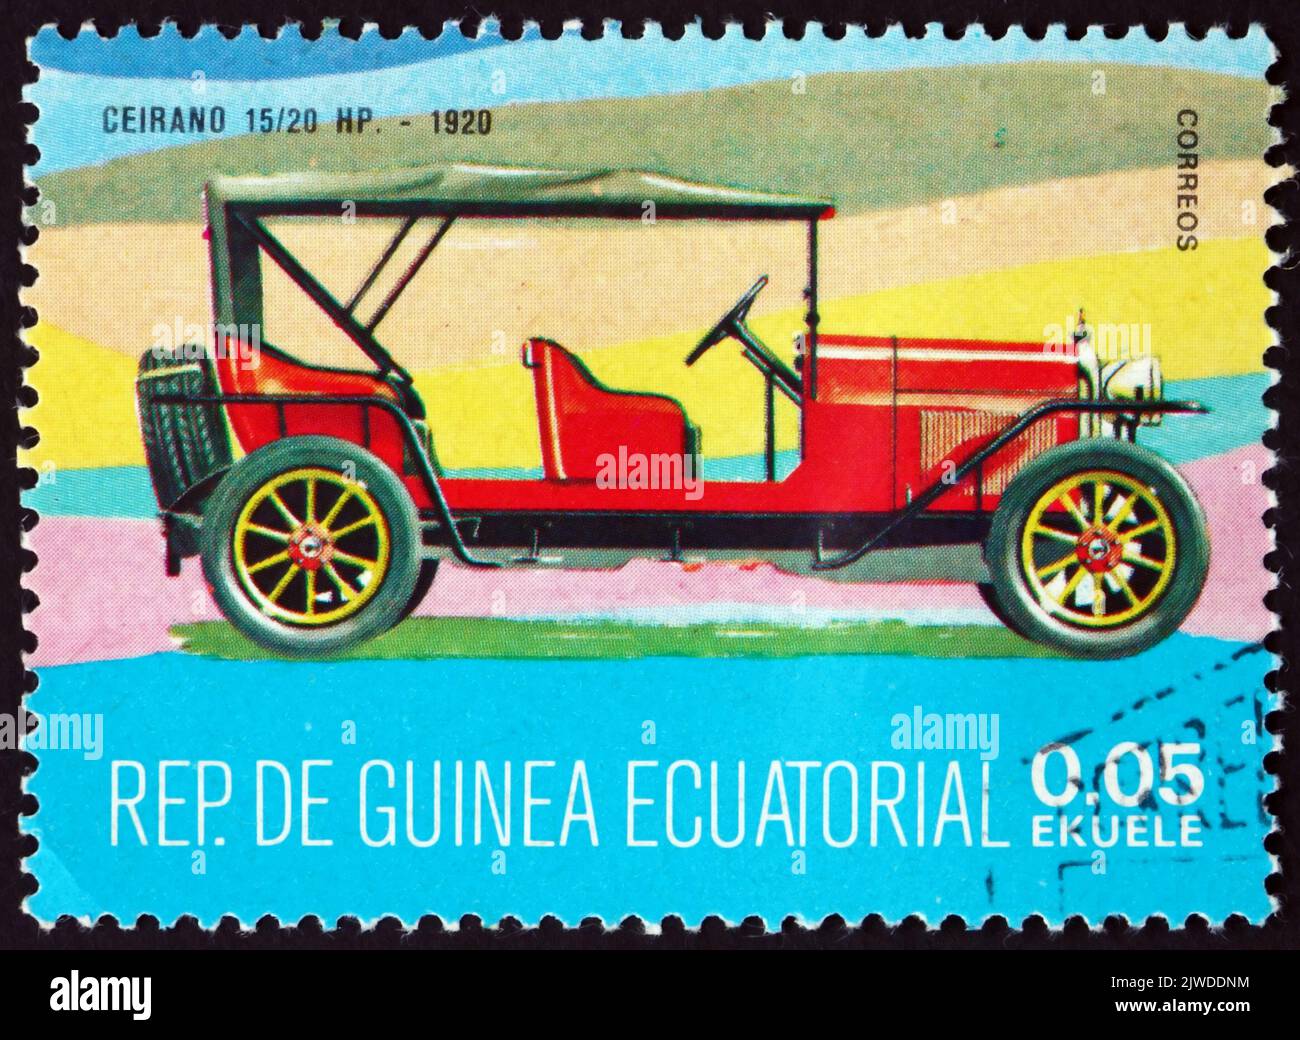 EQUATORIAL GUINEA - CIRCA 1977: a stamp printed in Equatorial Guinea shows Ceirano 15/20HP, 1920, oldtimer, circa 1977 Stock Photo